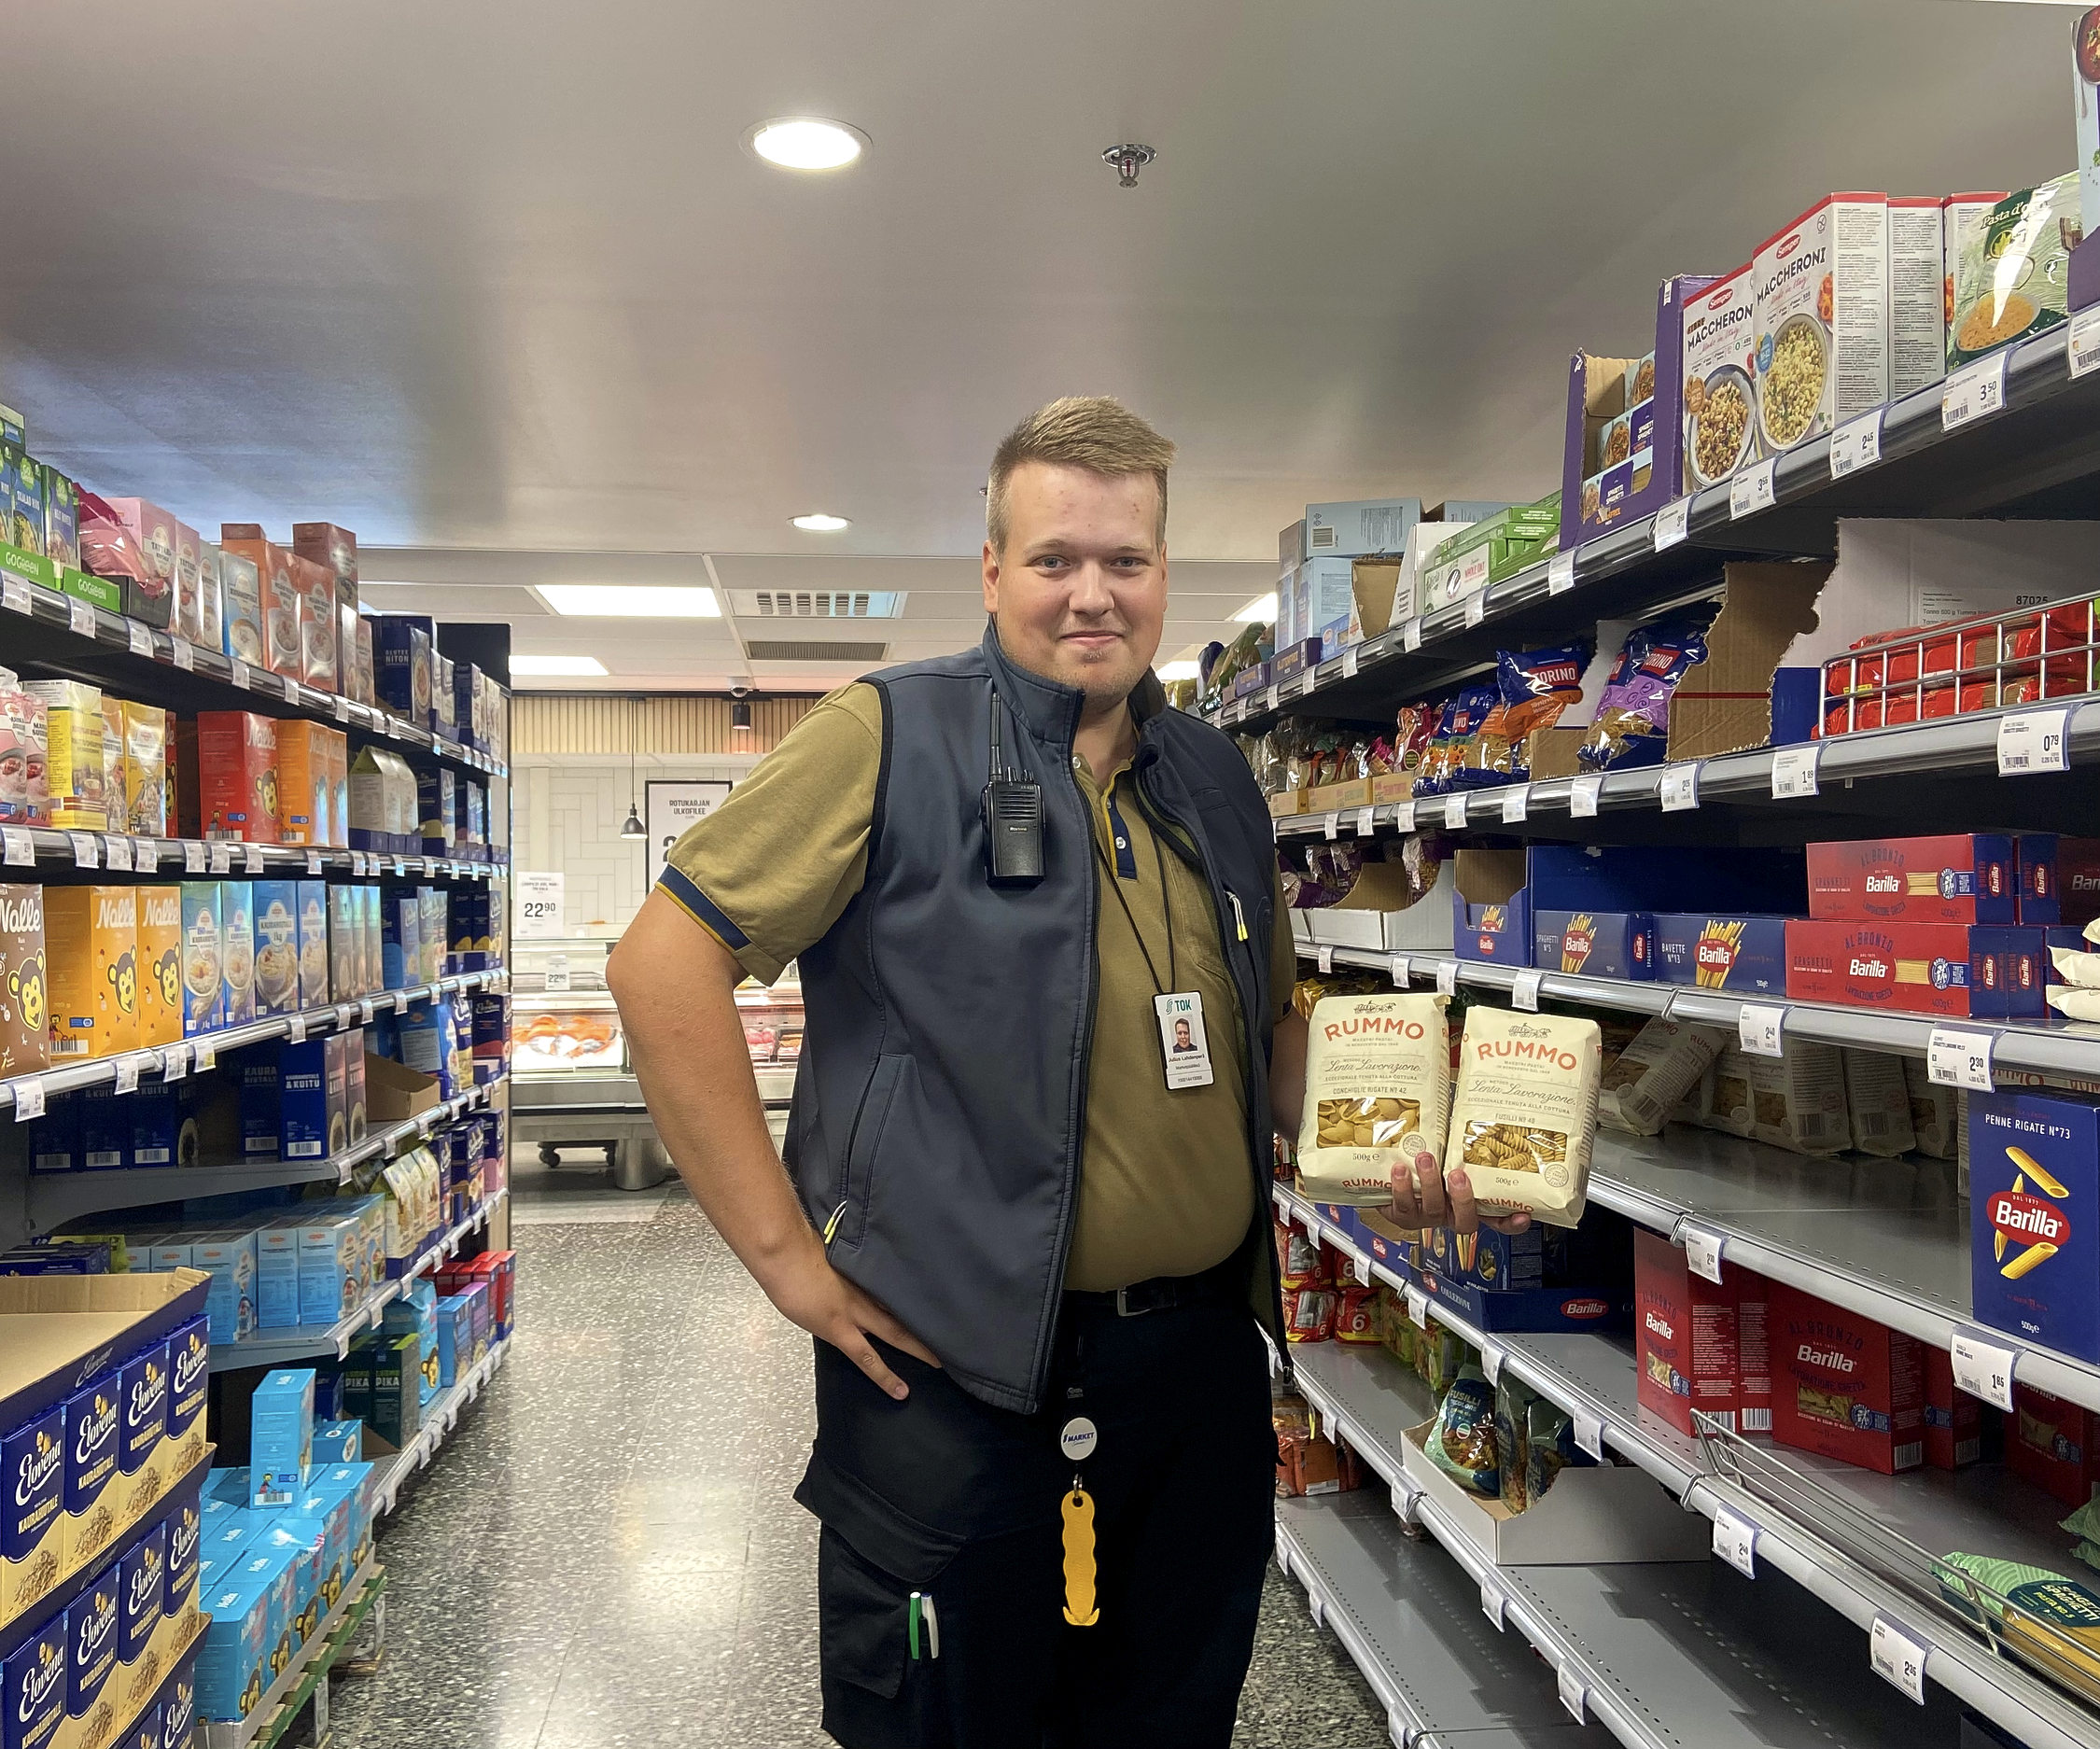 En man i arbetskläder och pastapaket i handen står mellan två butikshyllor.